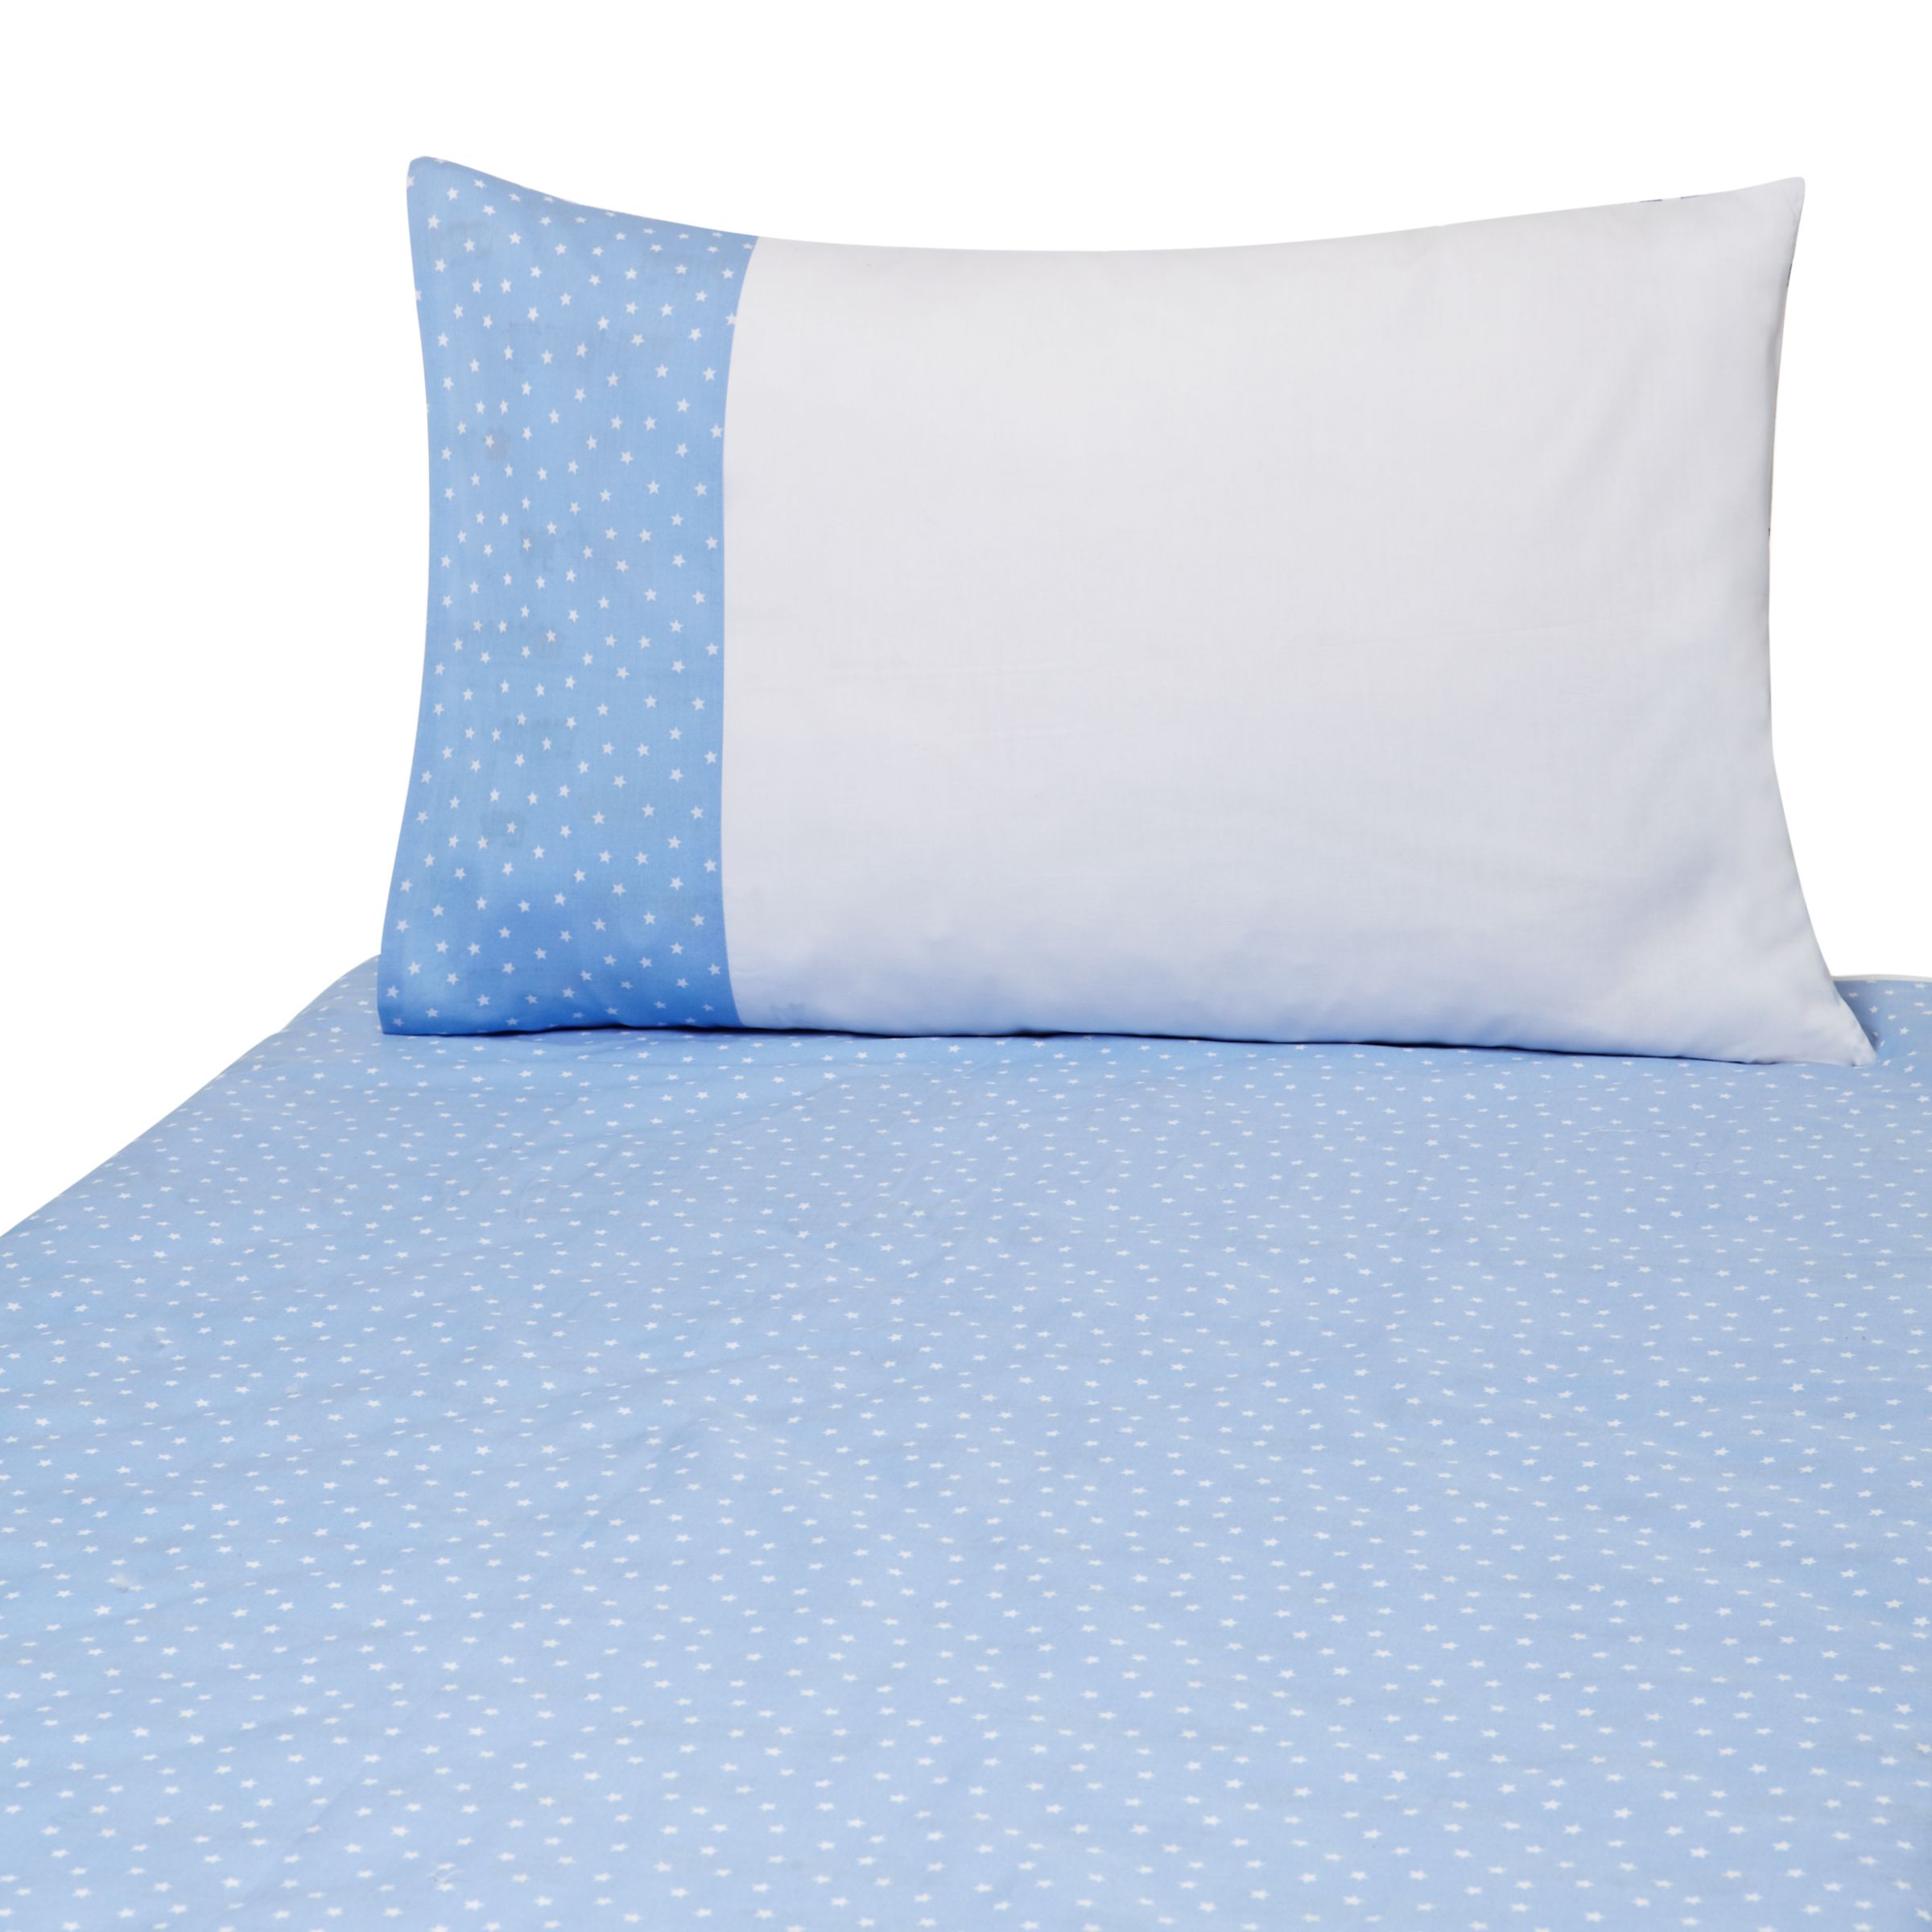 John Lewis Applique Train Cotbed Duvet Cover And Pillow Set Blue